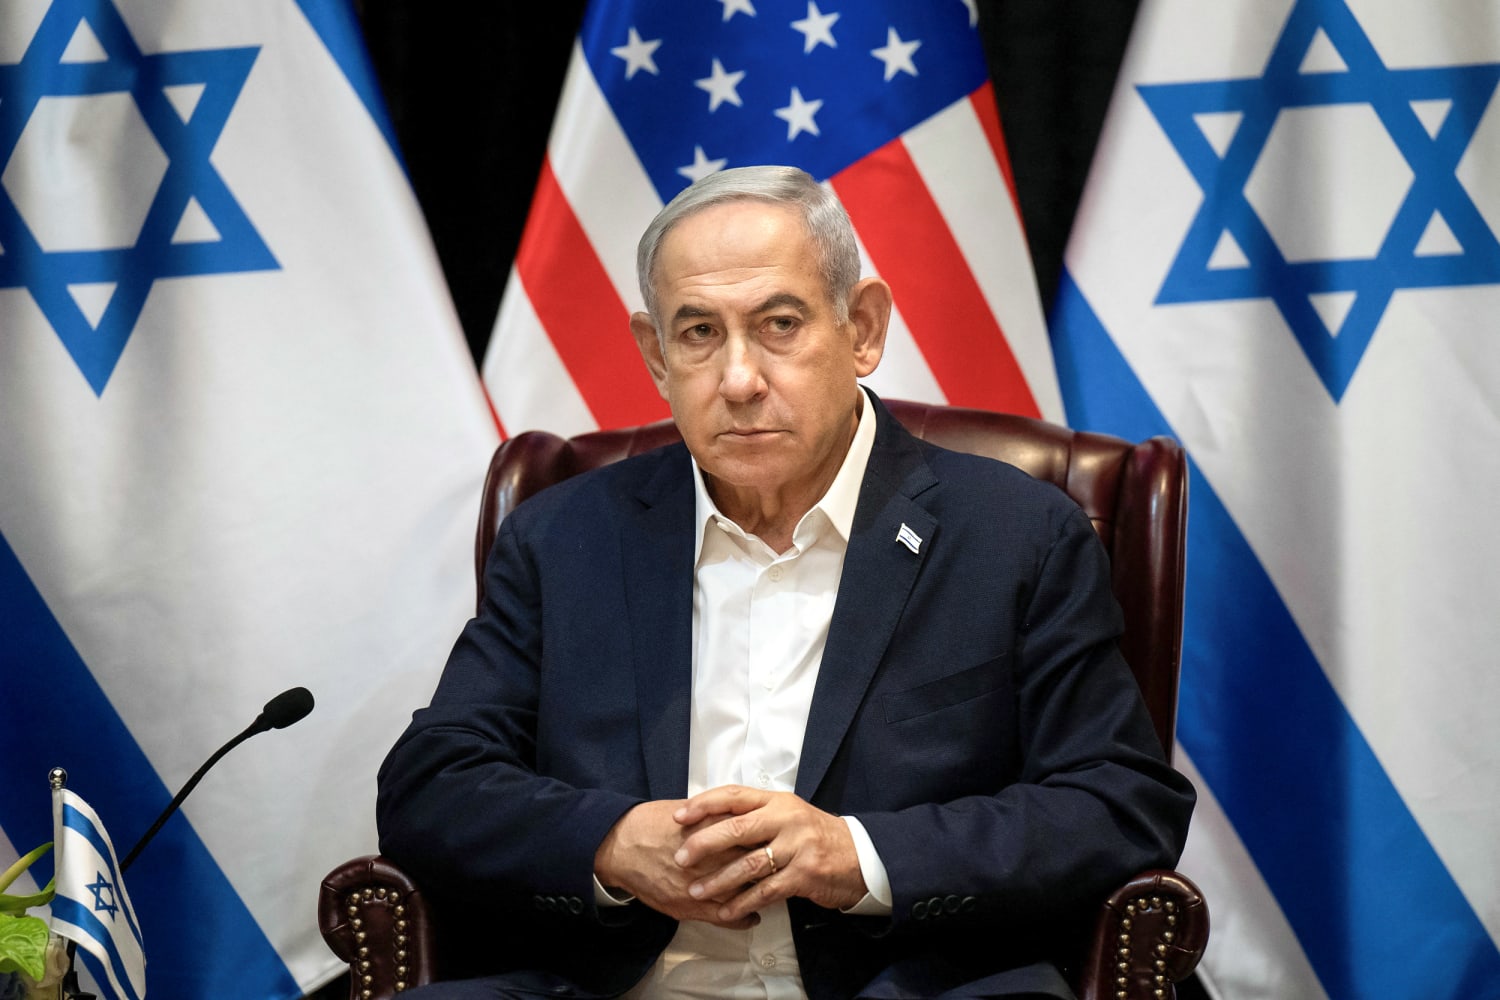 La Cámara de Representantes de EE.UU. vota a favor de imponer sanciones a la Corte Internacional por las órdenes de arresto emitidas contra Netanyahu y otros funcionarios israelíes